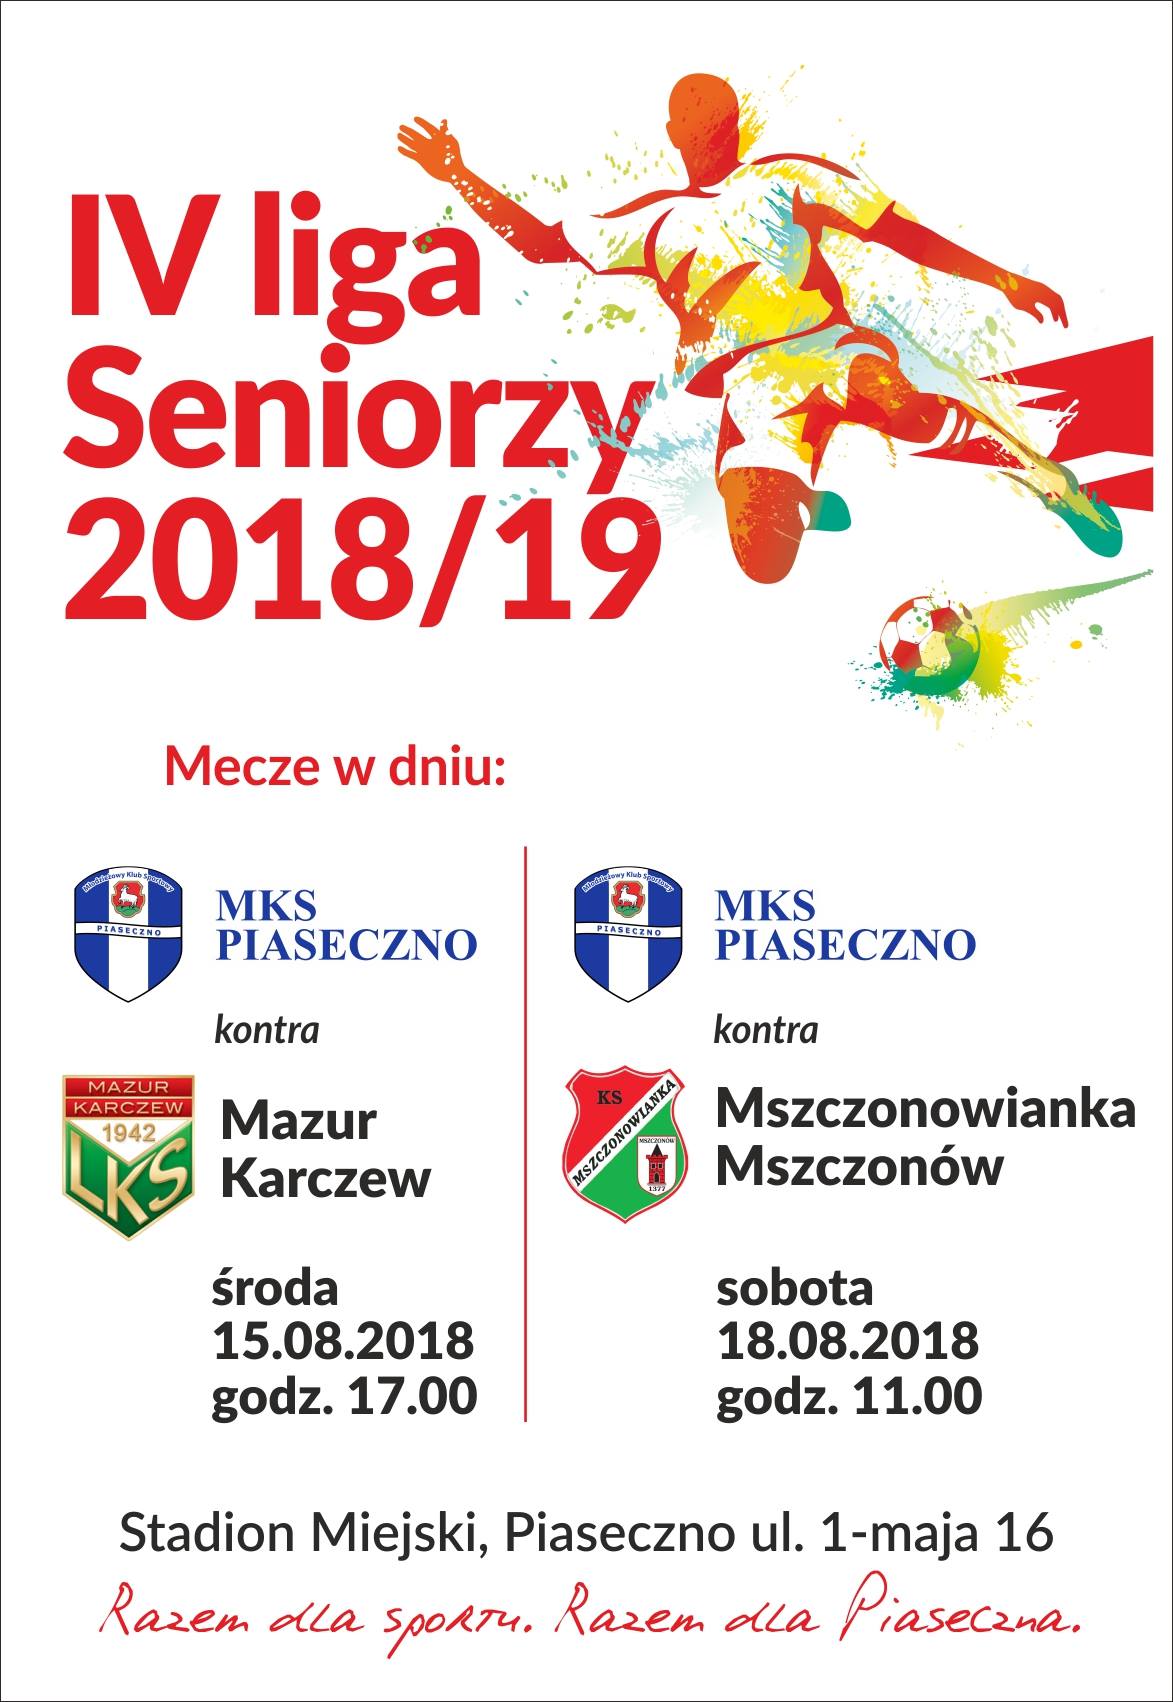 MKS Piaseczno zagra mecze piłki nożnej z Mazur Karczew oraz Mszczonowianką Mszczonów 